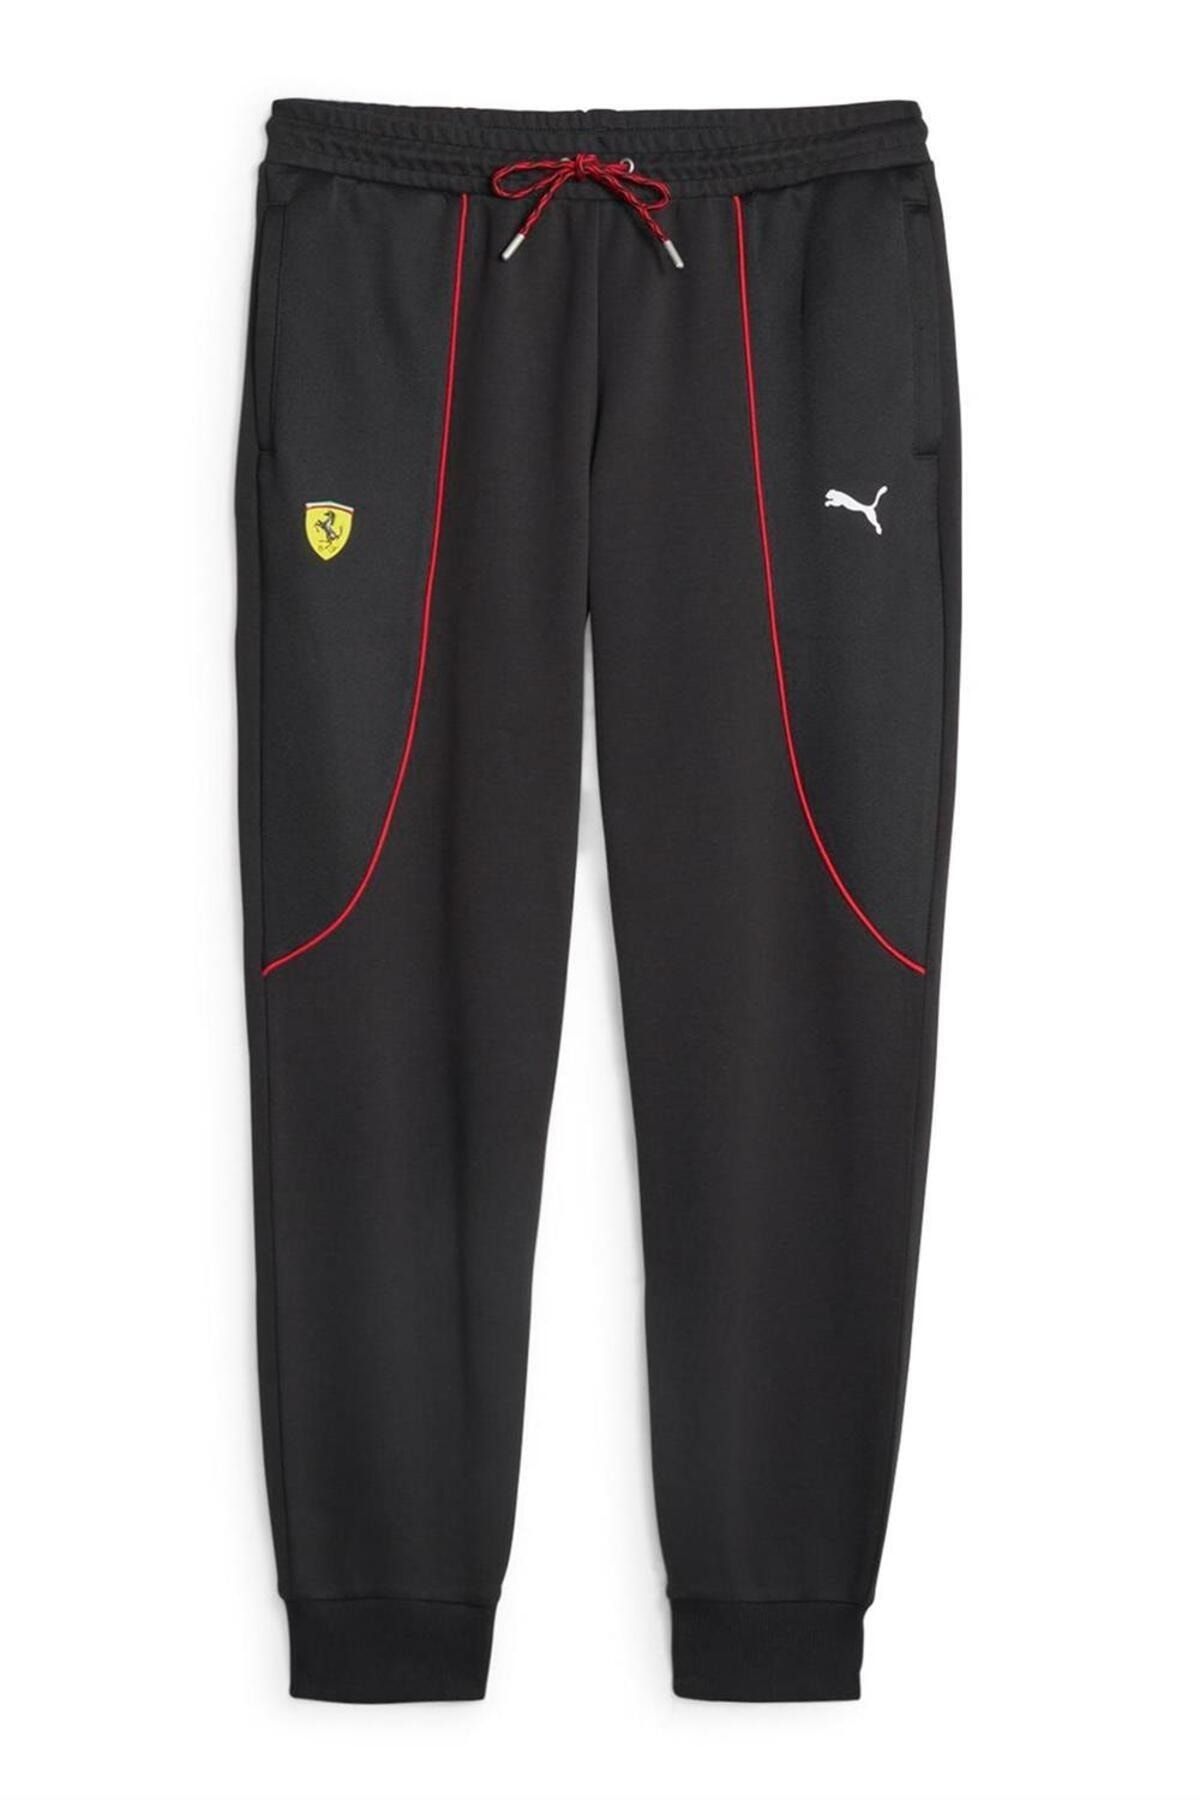 Scuderia Ferrari Men's Motorsport Race Sweat Pants